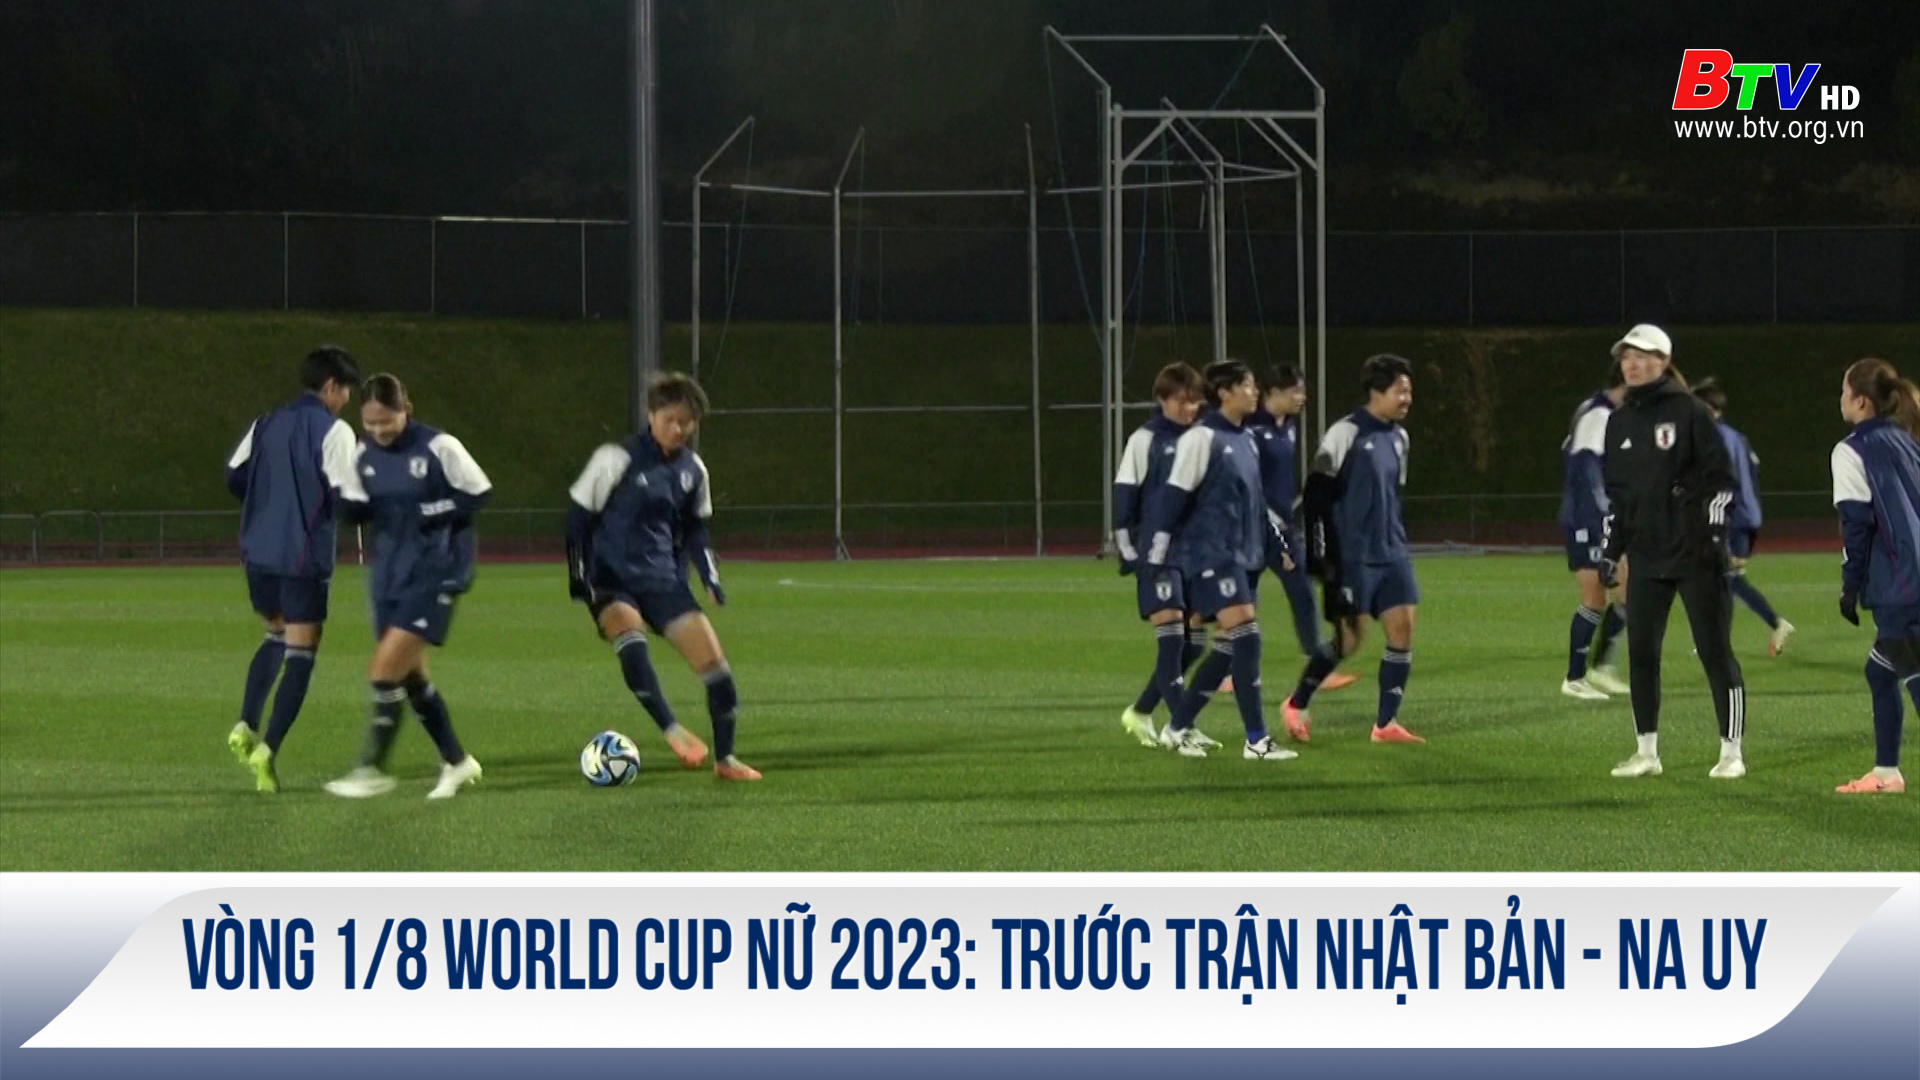 Vòng 1/8 World Cup nữ 2023: Trước trận Nhật Bản - Na Uy